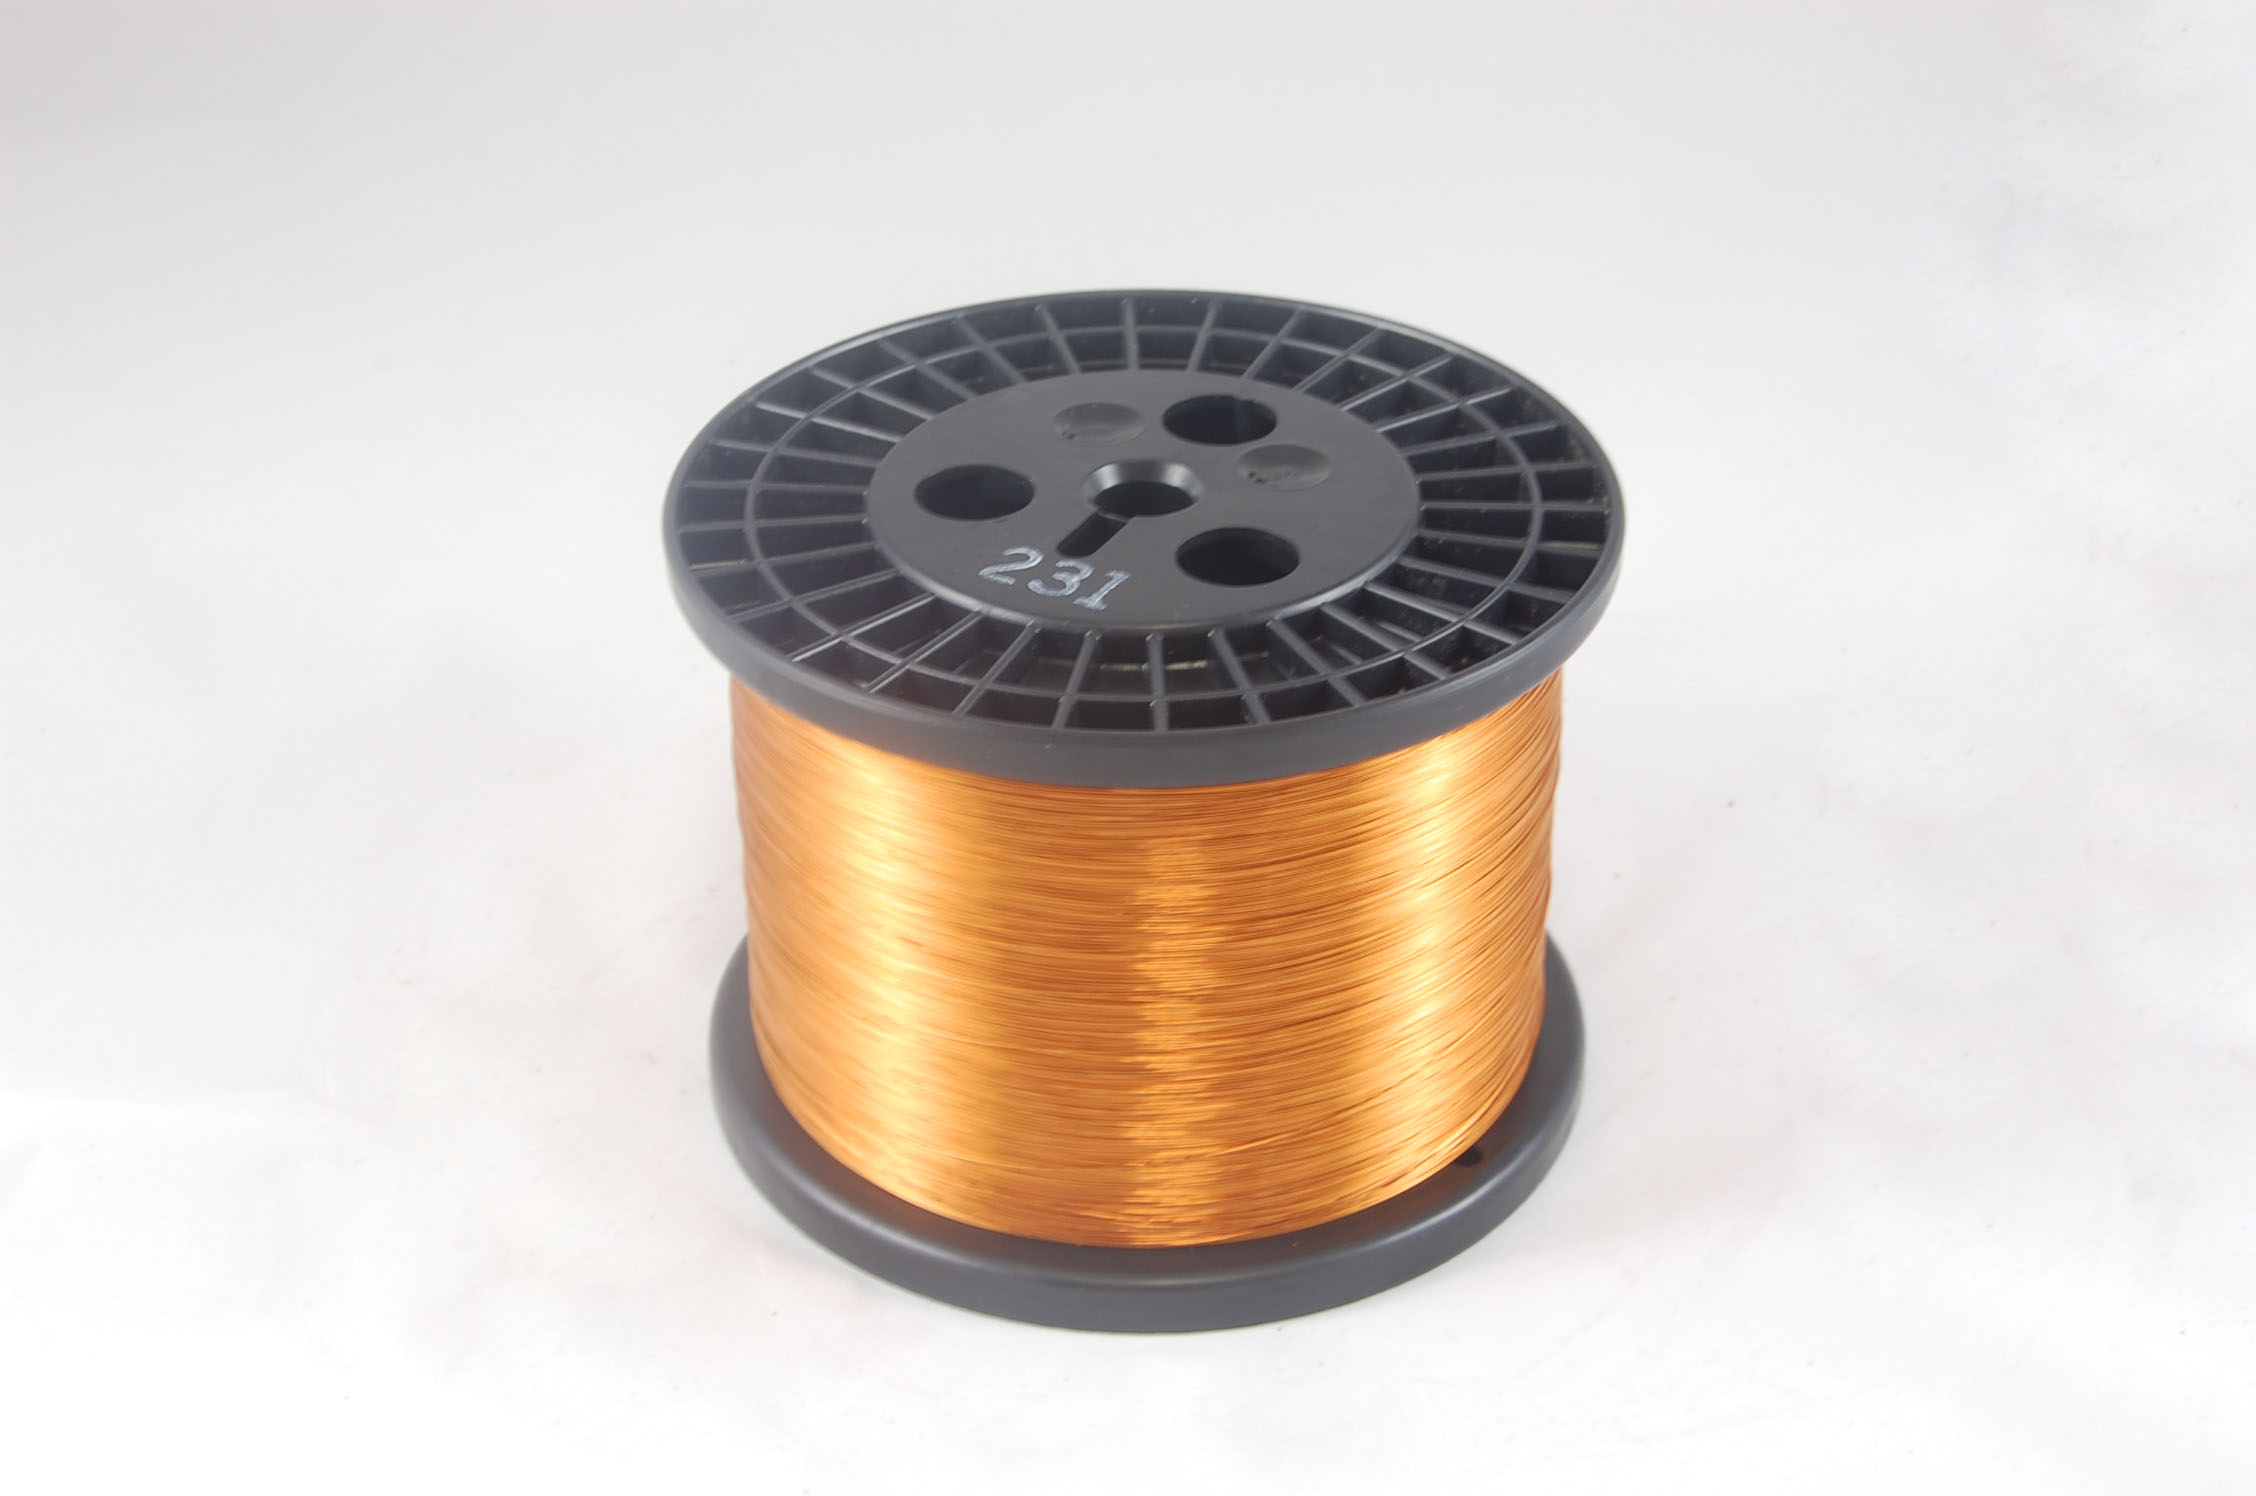 #19 Heavy GP/MR-200 Round MW 35 Copper Magnet Wire 200°C, copper, 10 LB 6" spool (average wght.)